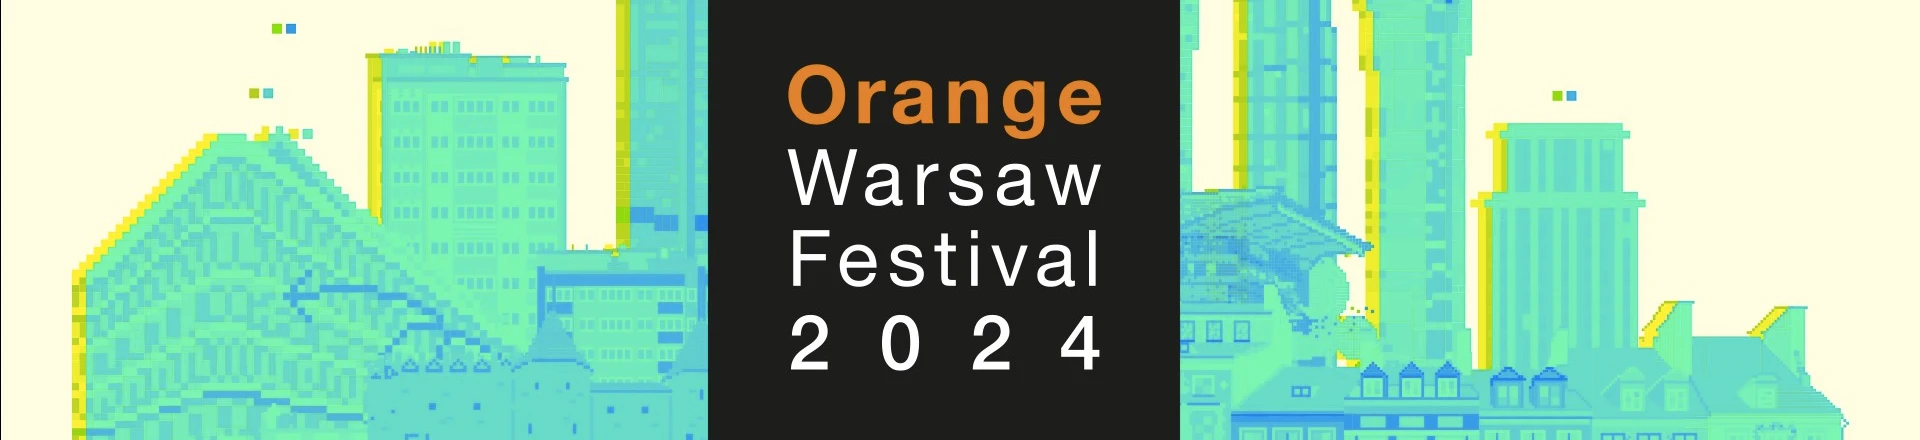 Orange Warsaw Festival już w czerwcu